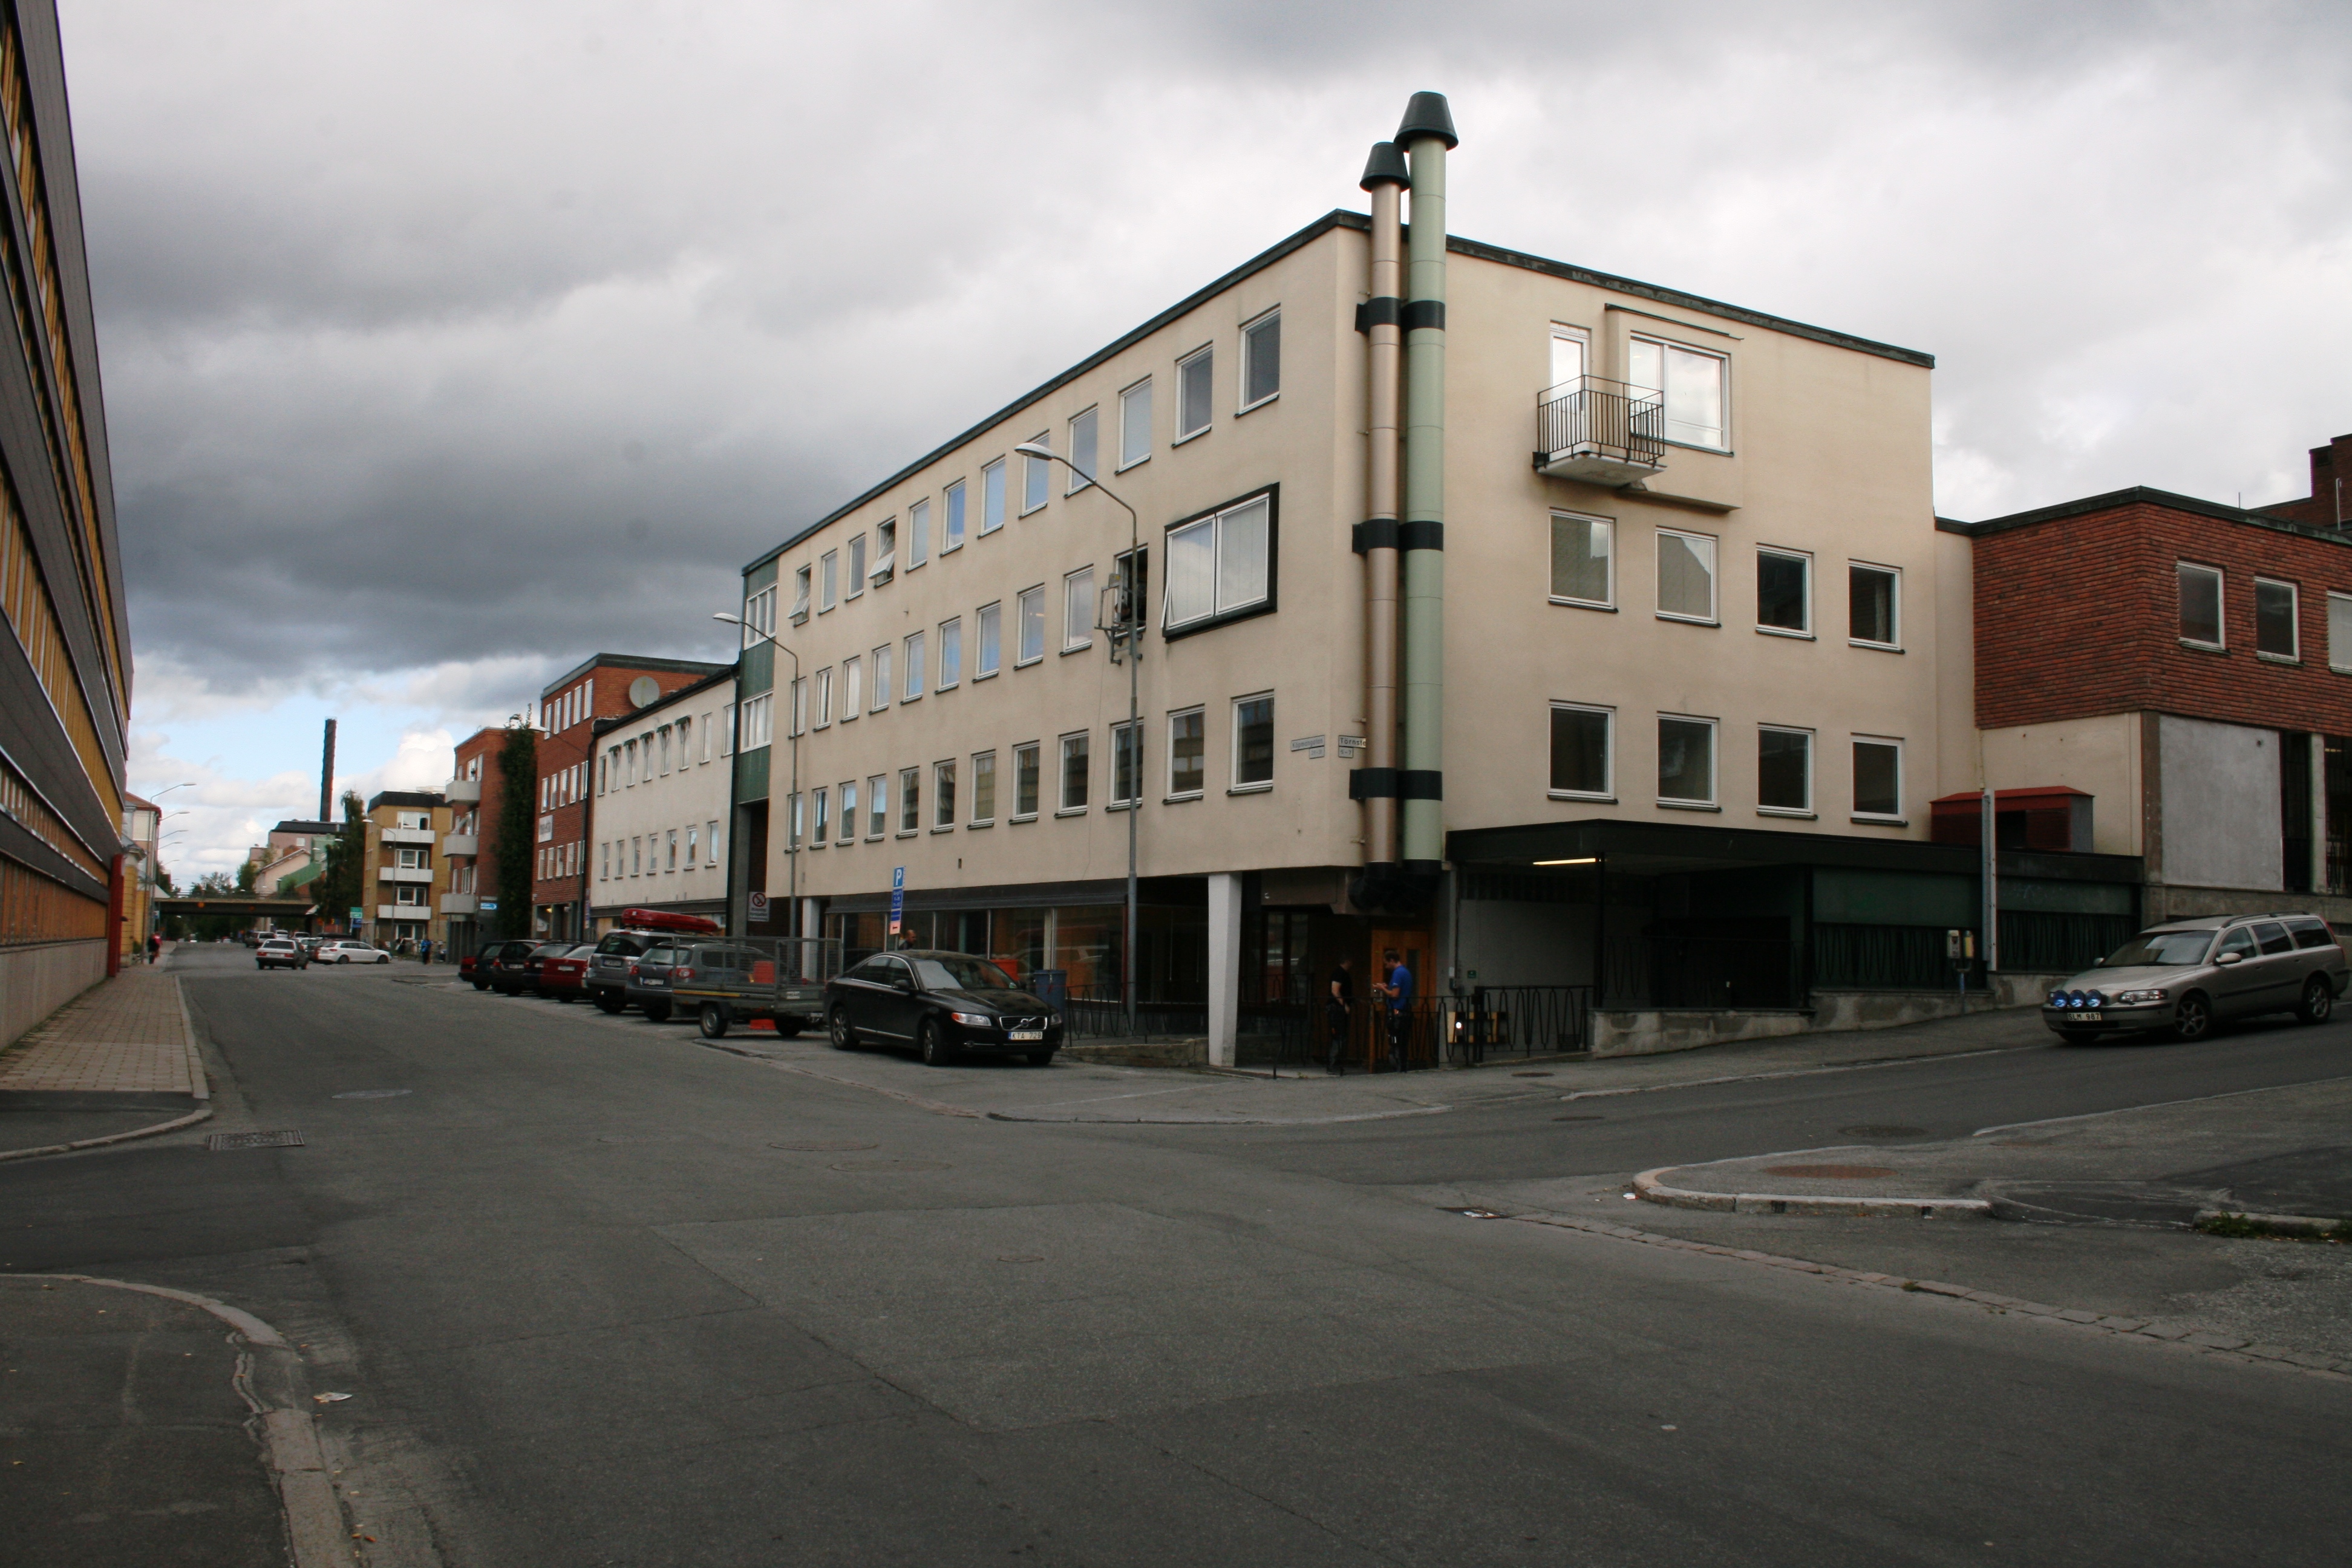 Affärs- och kontorshus, sett från Köpmangatan.